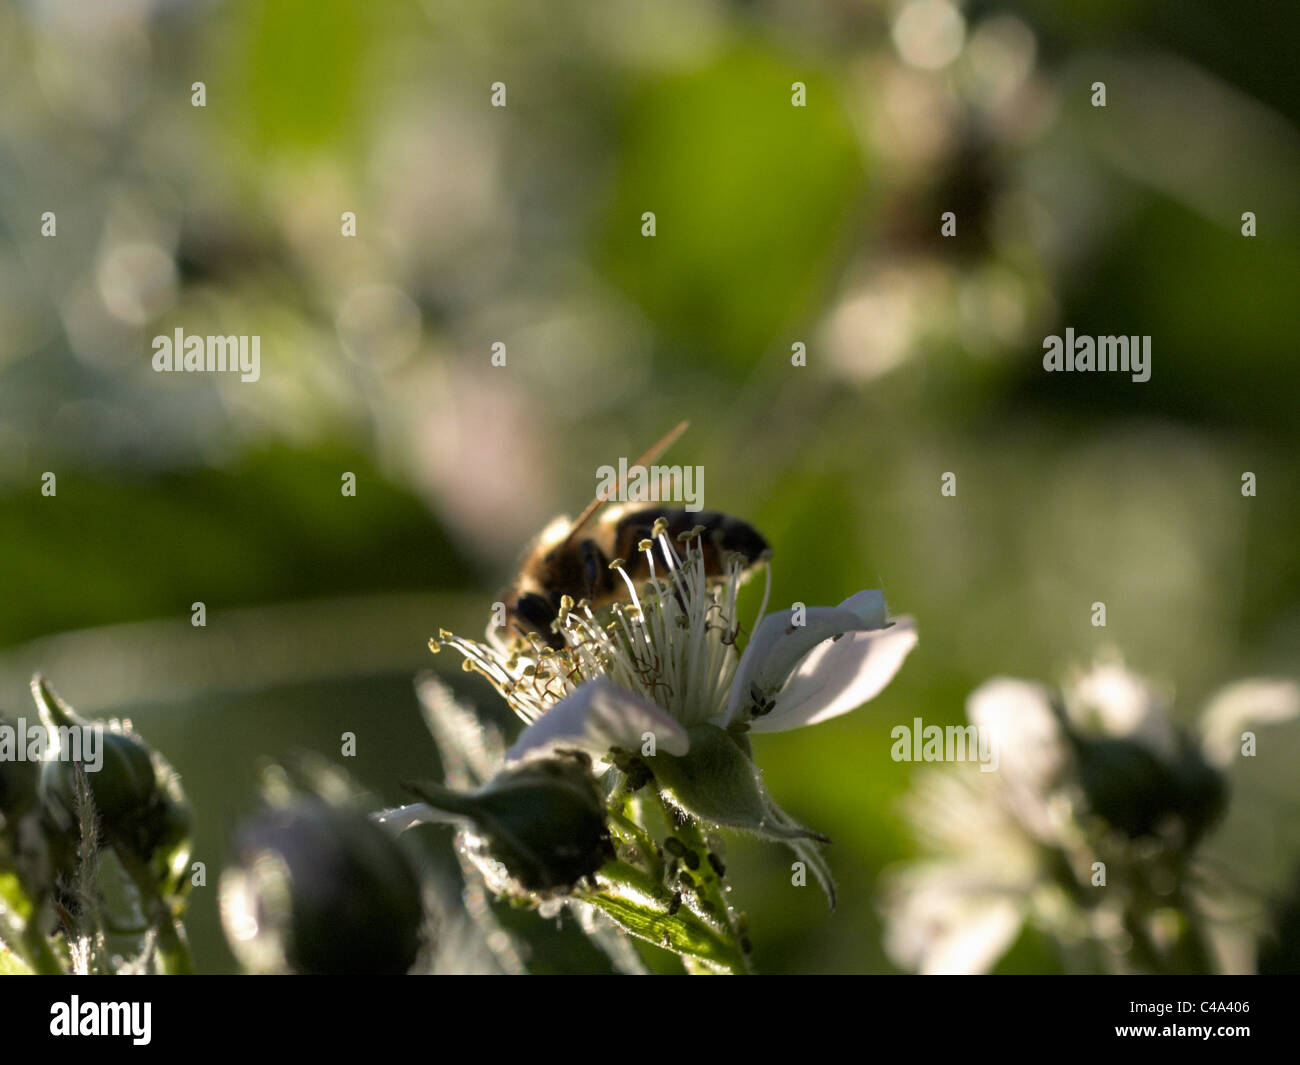 Makro-Bild von einer Honigbiene, sammeln von Pollen auf einer Himbeere Blume, beleuchtet von einem starkem Sonnenschein mit Schwarm weitere kleine Bugs. Stockfoto